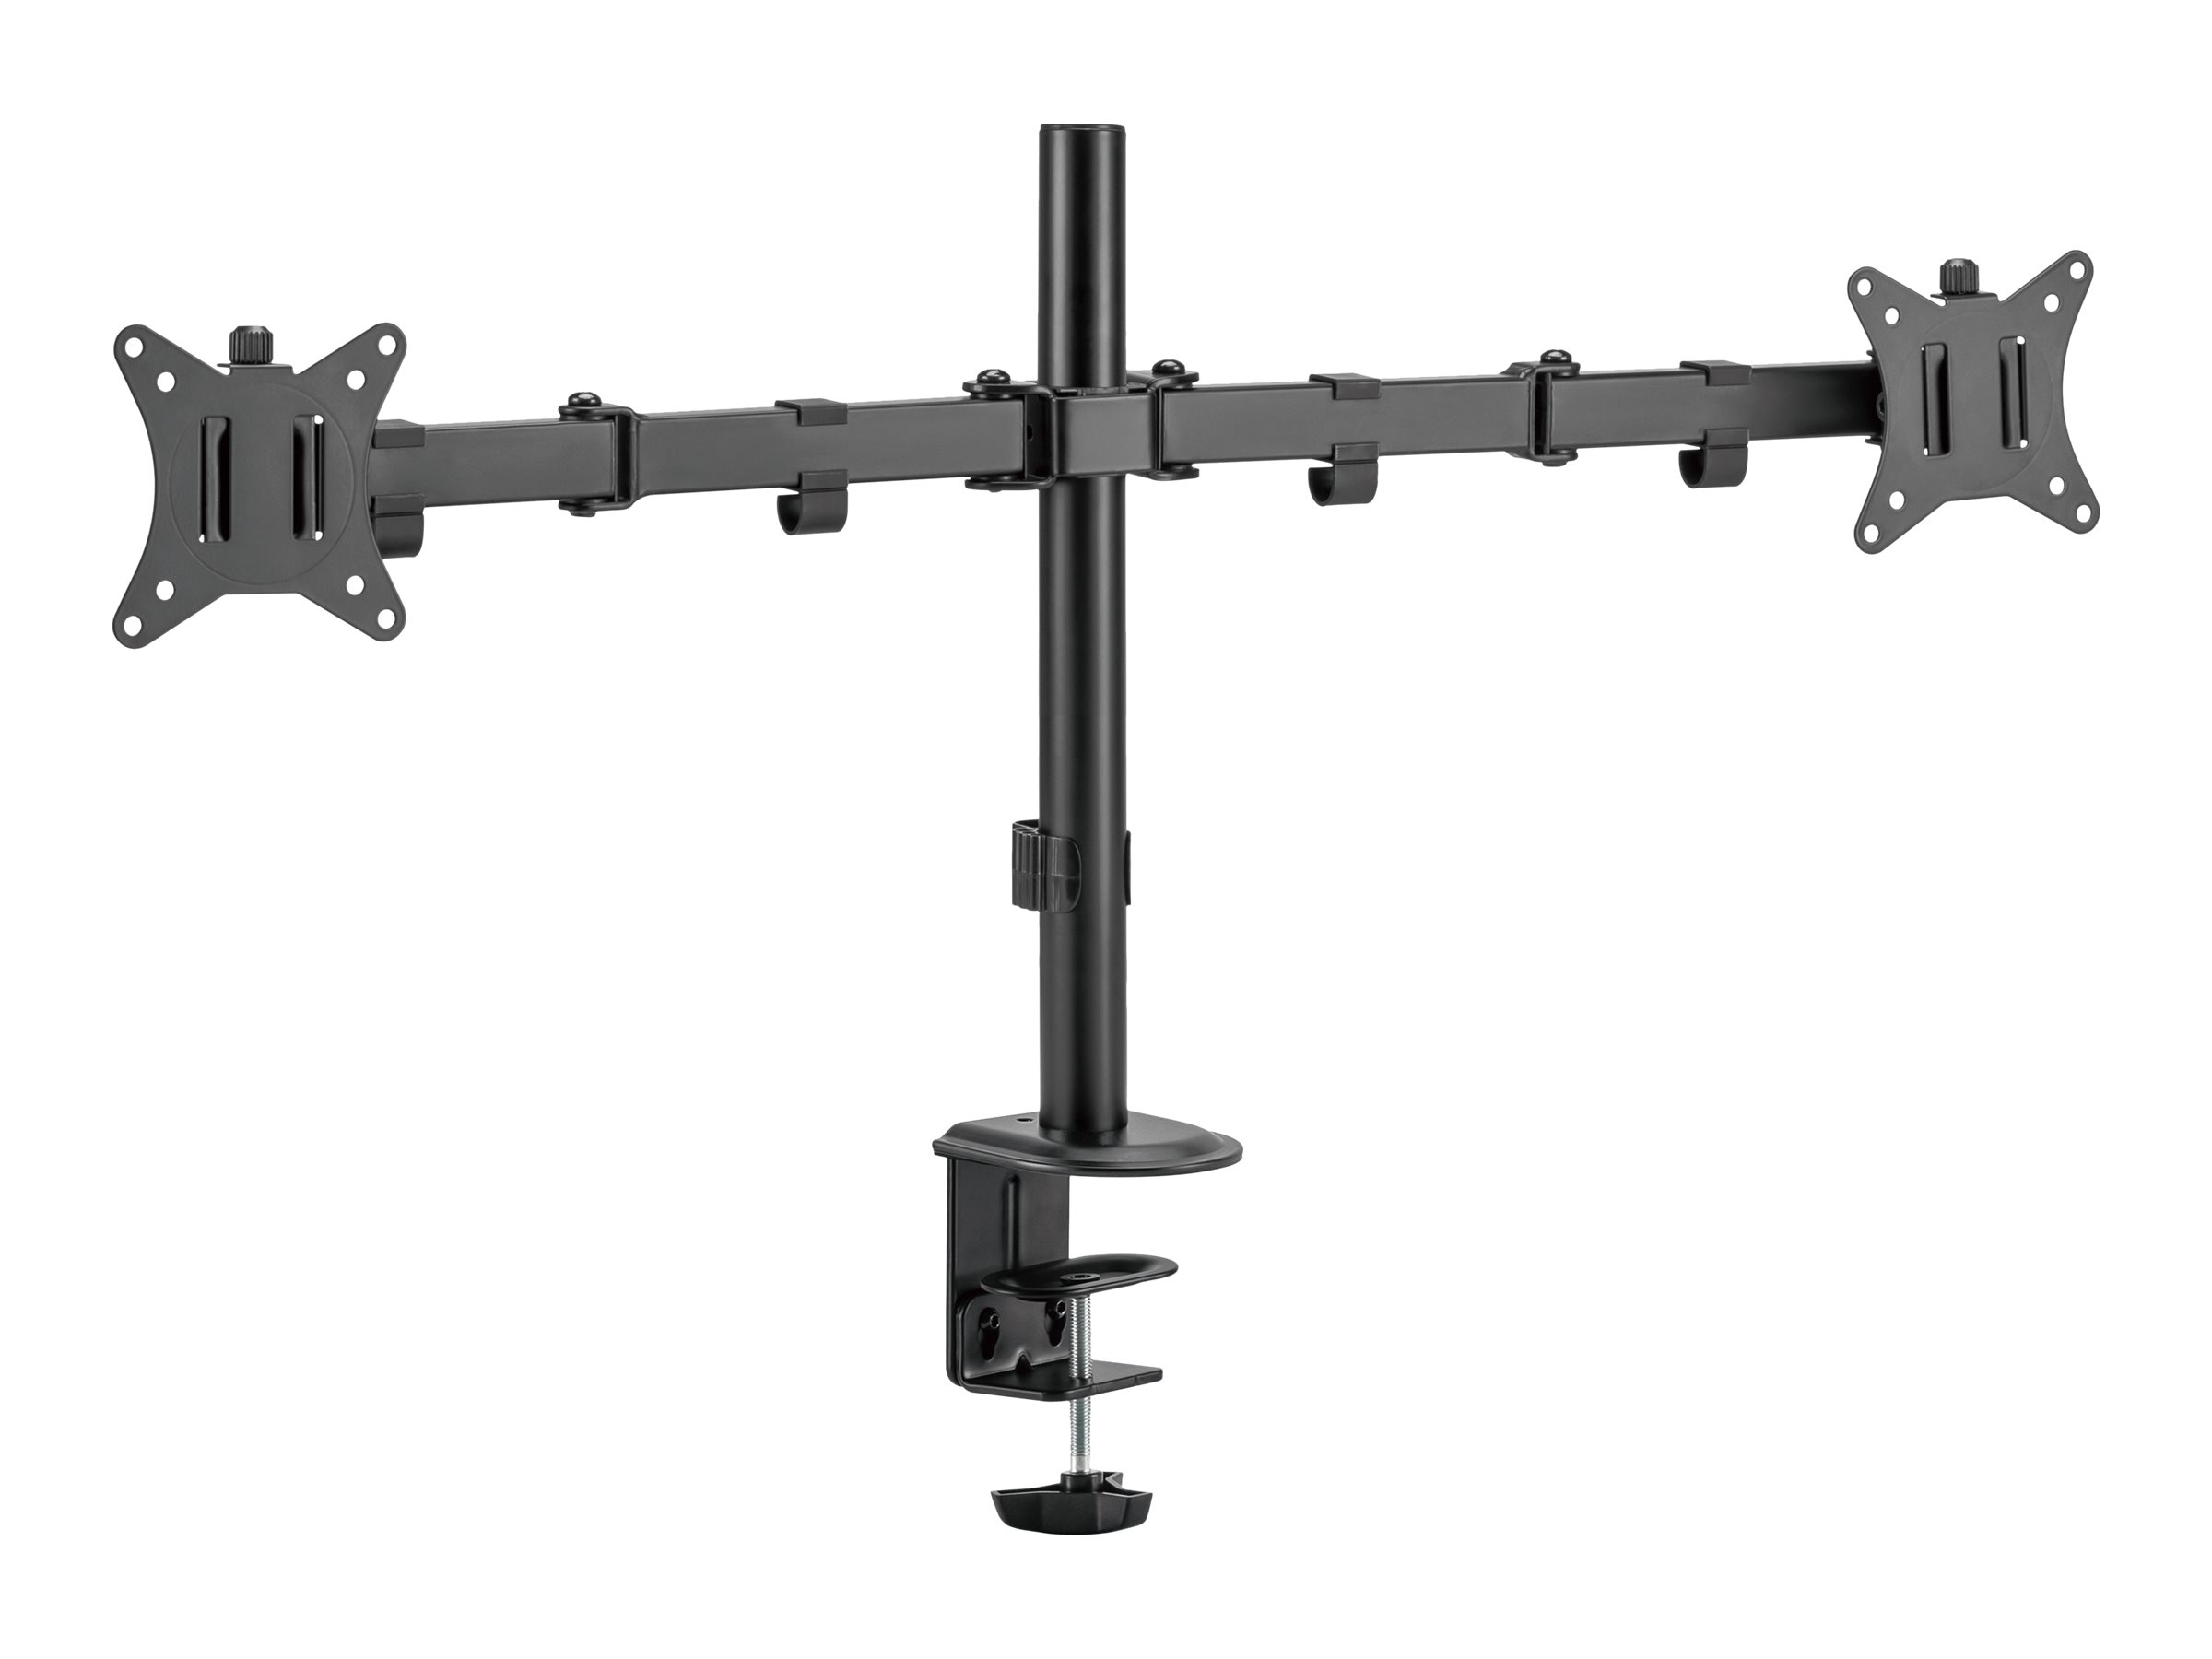 Equip Befestigungskit (Klammer, Tischplattenbohrung, Tischmontage, Klammer) - neigbar - für 2 LCD-/P